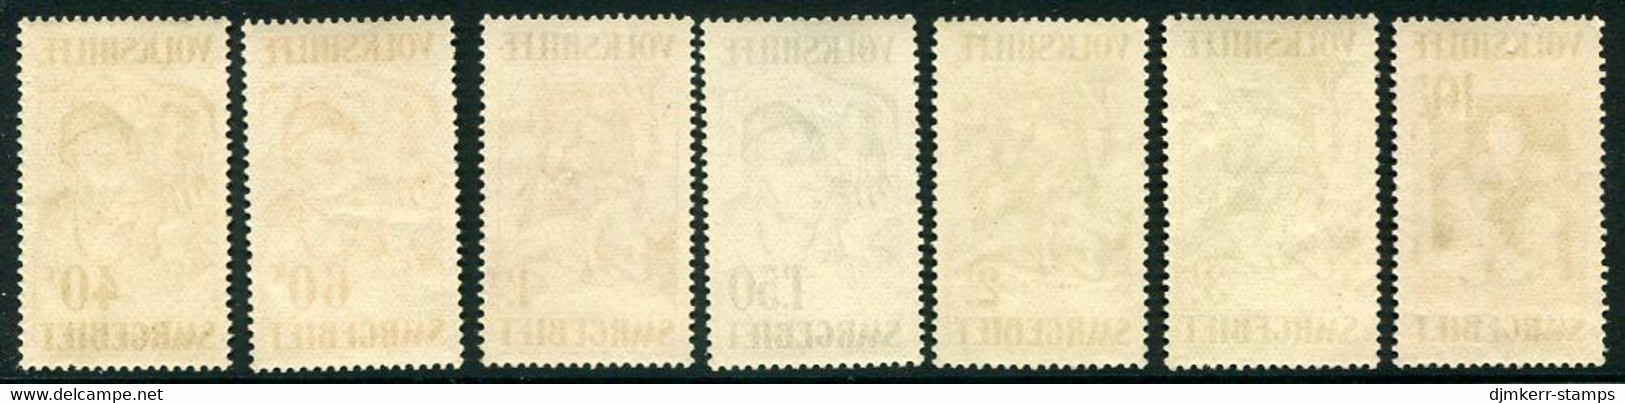 SAAR 1931 National Relief: Paintings LHM / *.  Michel 144-50 - Unused Stamps